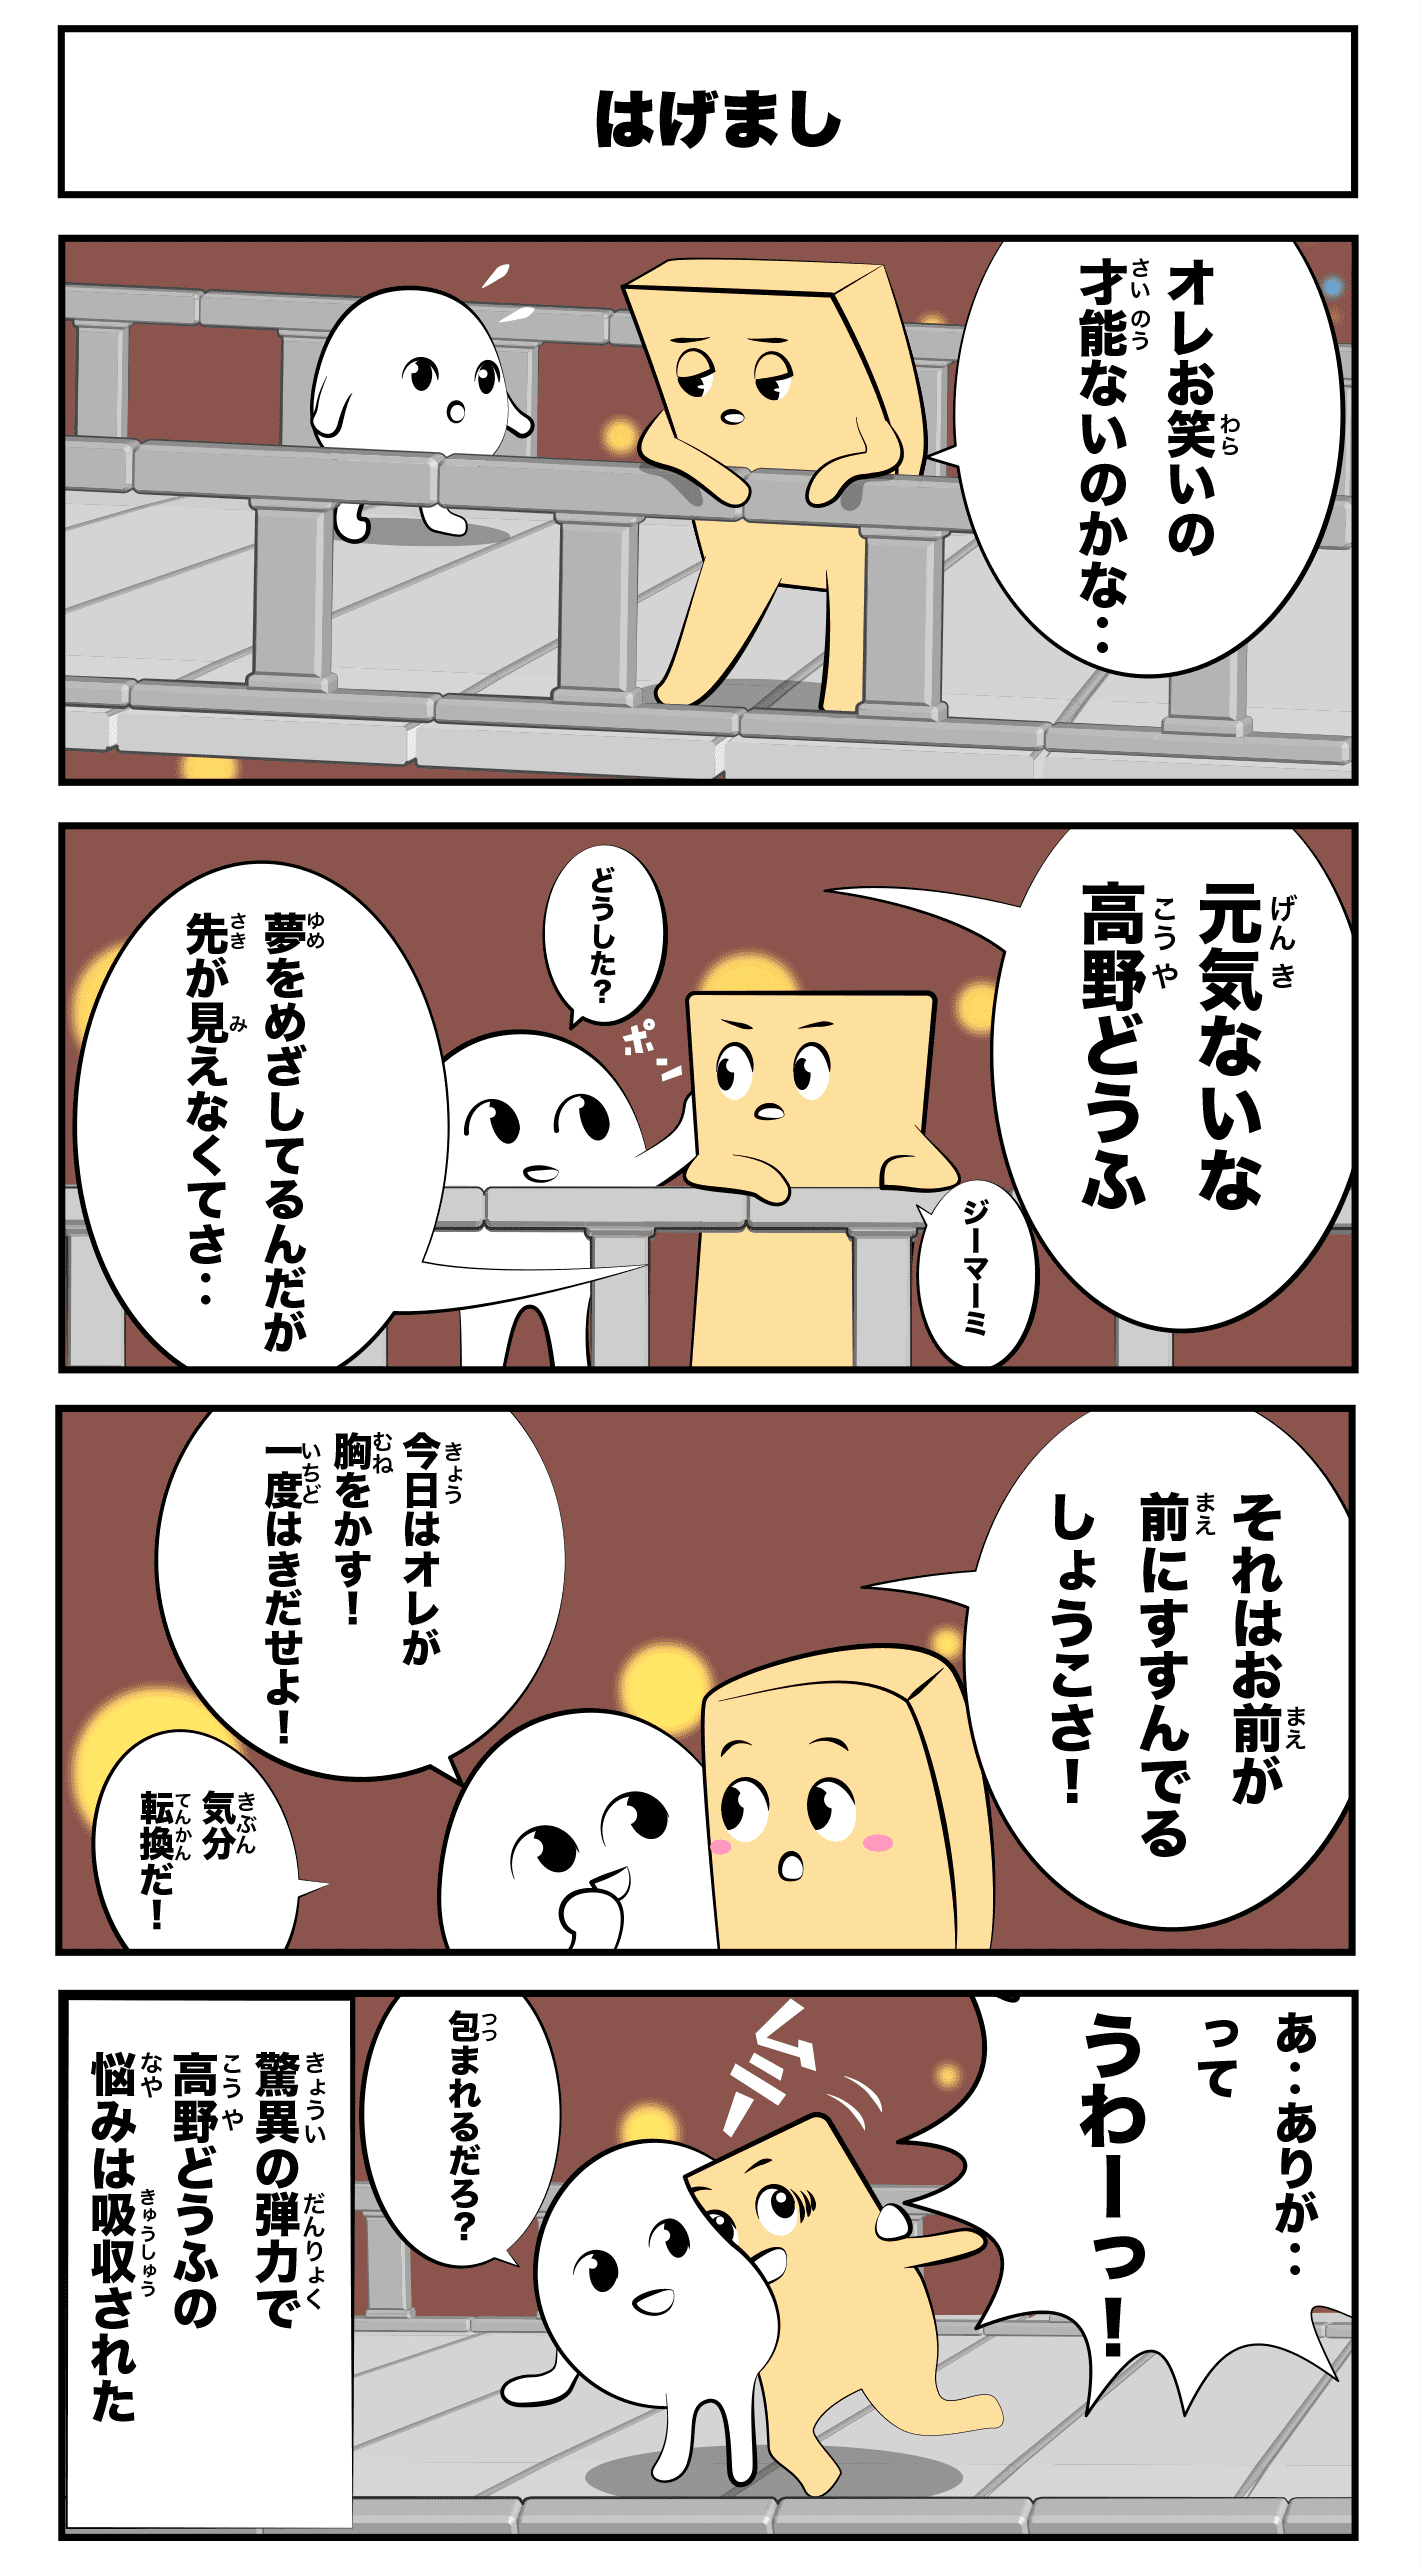 4コマ漫画「ジーマーミ豆腐」